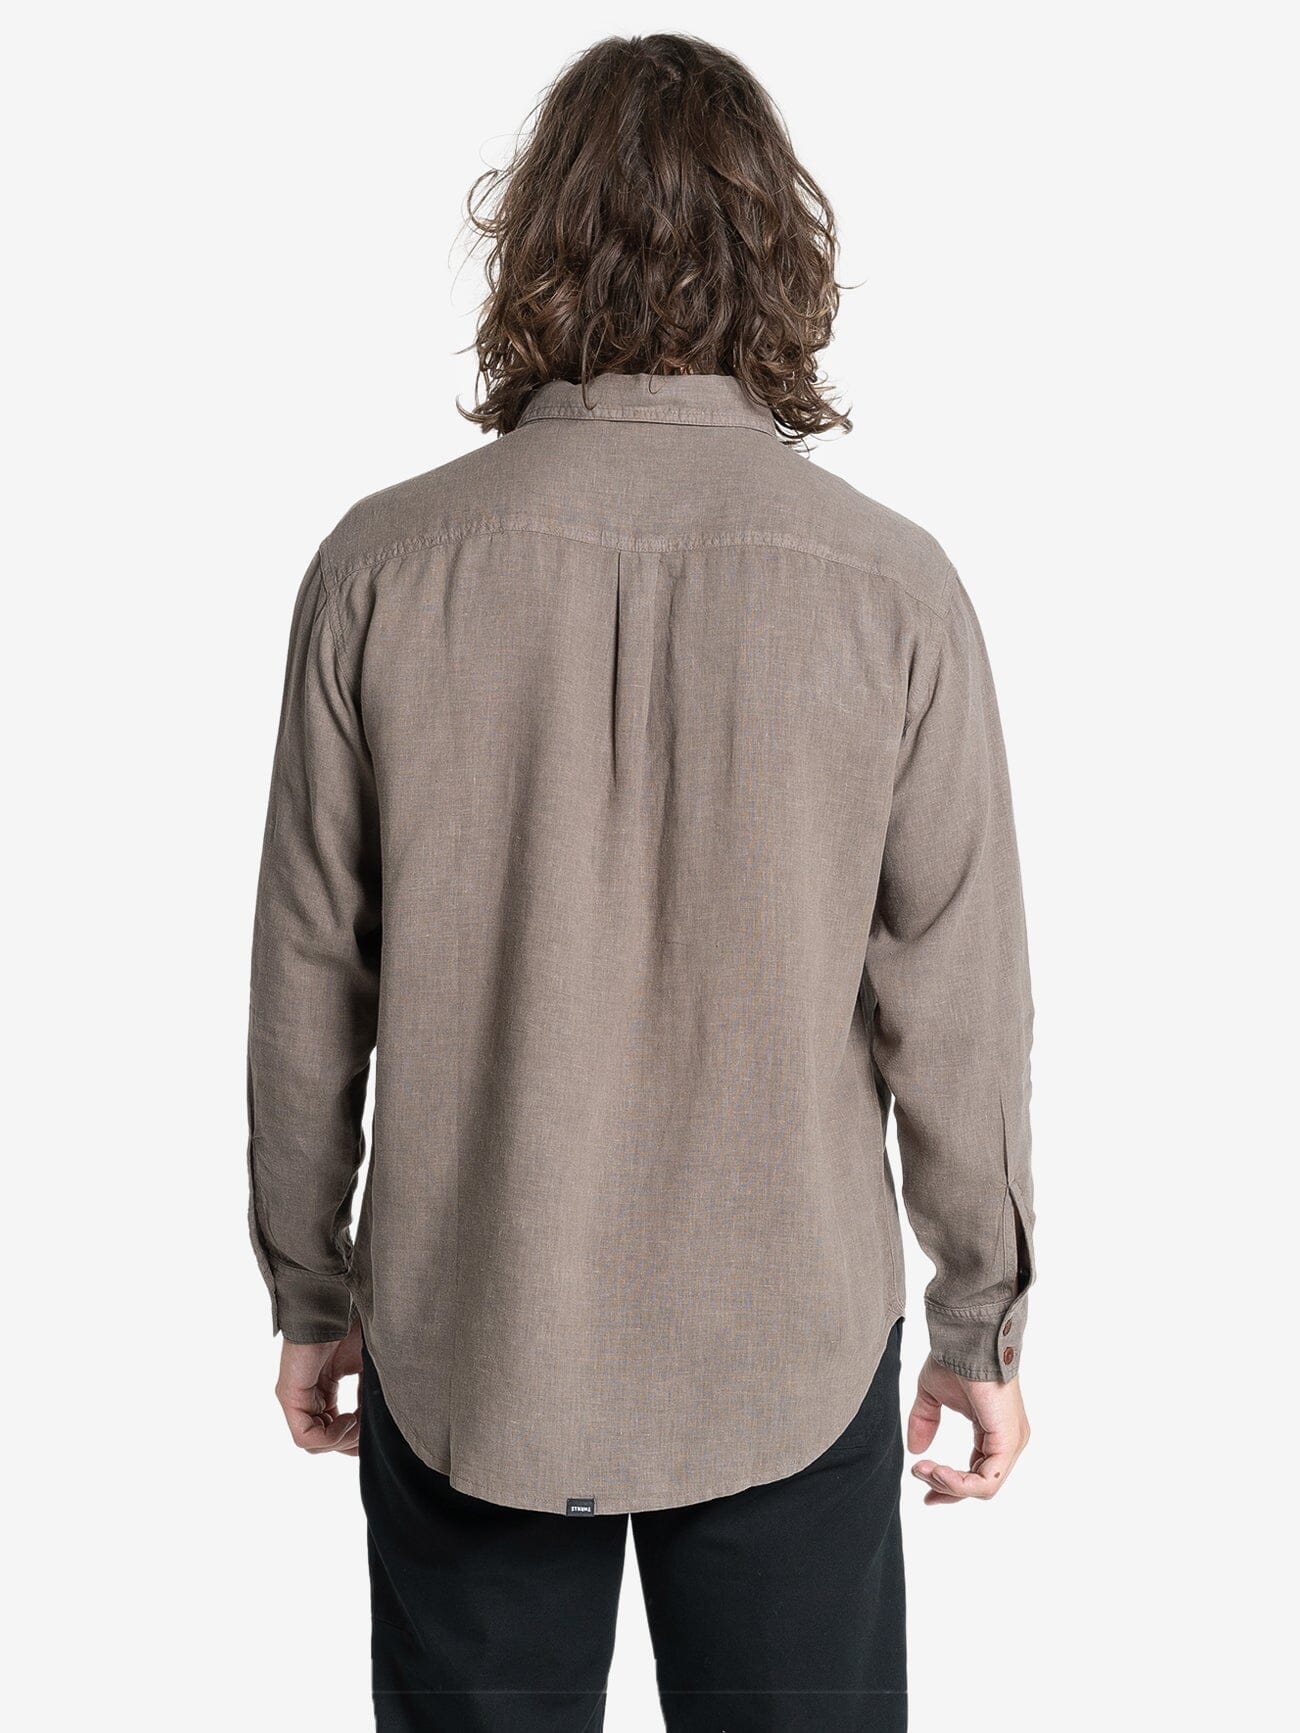 Hemp Minimal Thrills Oversize Long Sleeve Shirt - Light Canteen XS